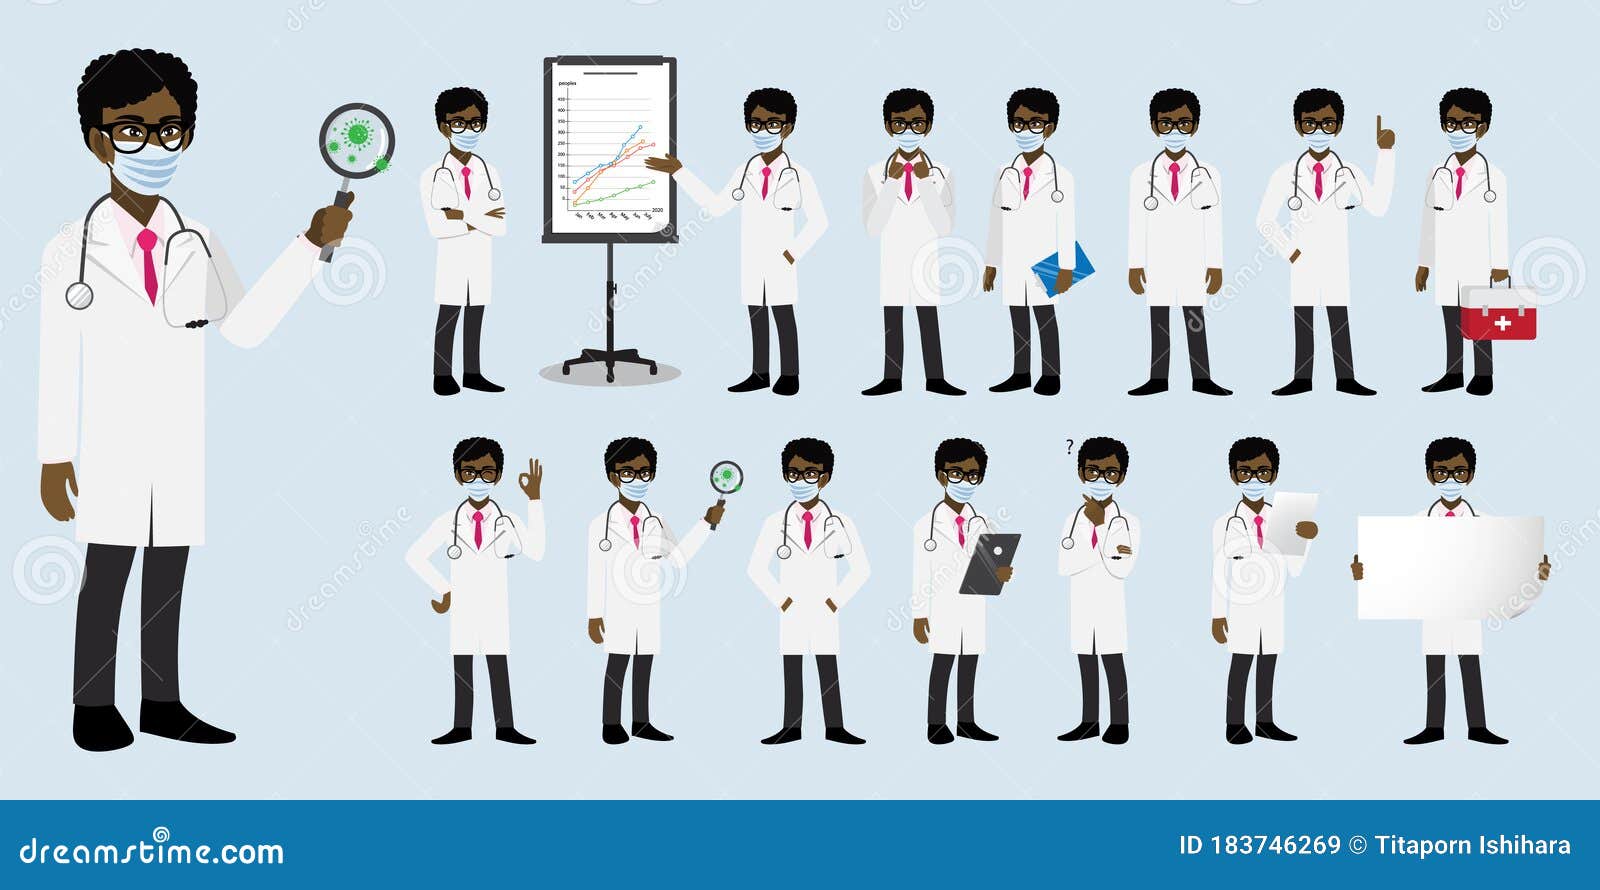 conjunto de personagens de desenhos animados de médica, médica africana  americana em poses diferentes, trabalhador médico